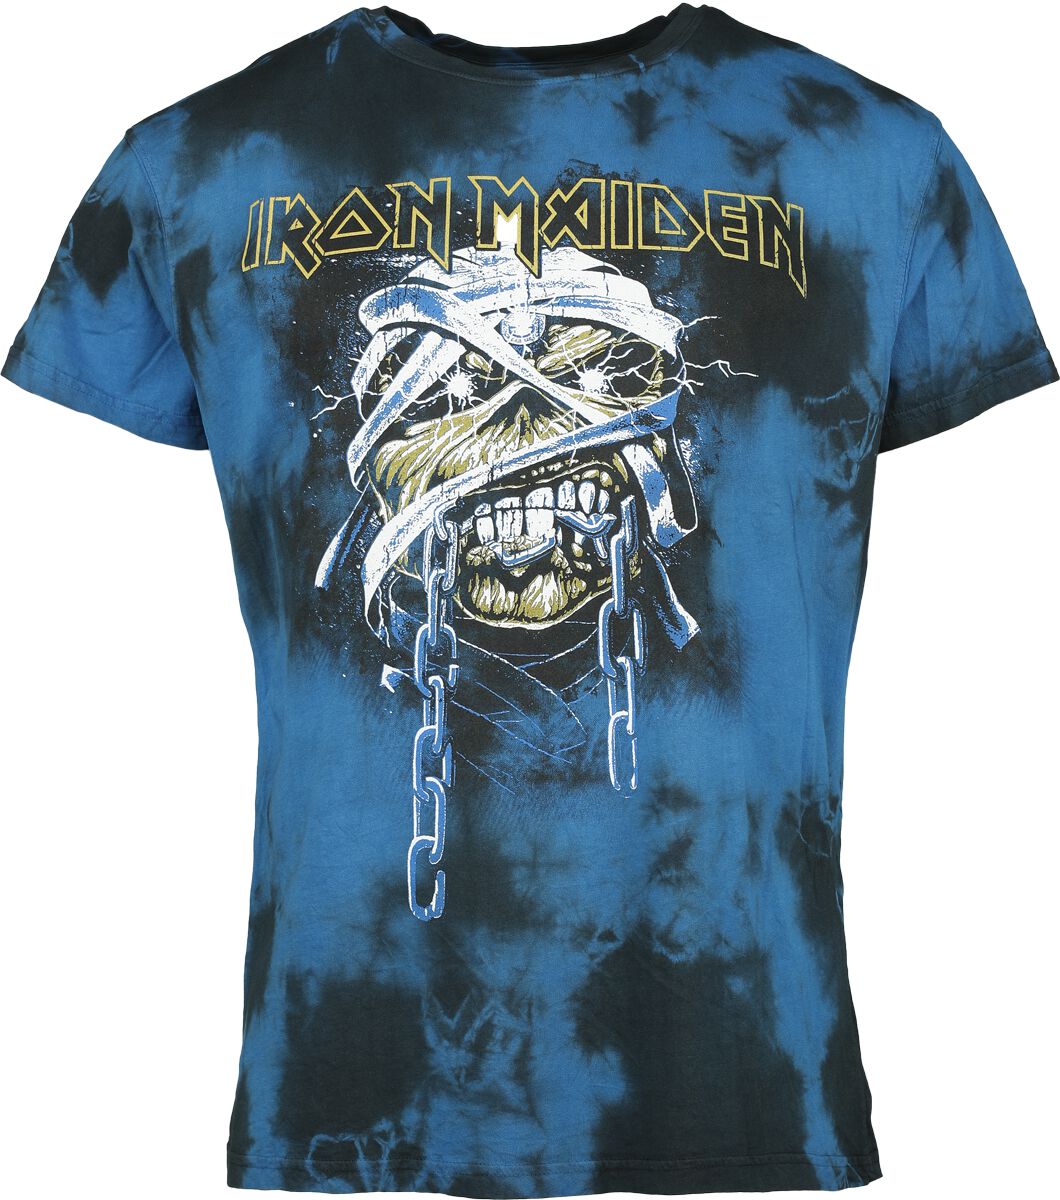 Iron Maiden T-Shirt - Powerslave - Mummy Head - S bis XXL - für Männer - Größe XL - schwarz/blau  - Lizenziertes Merchandise!